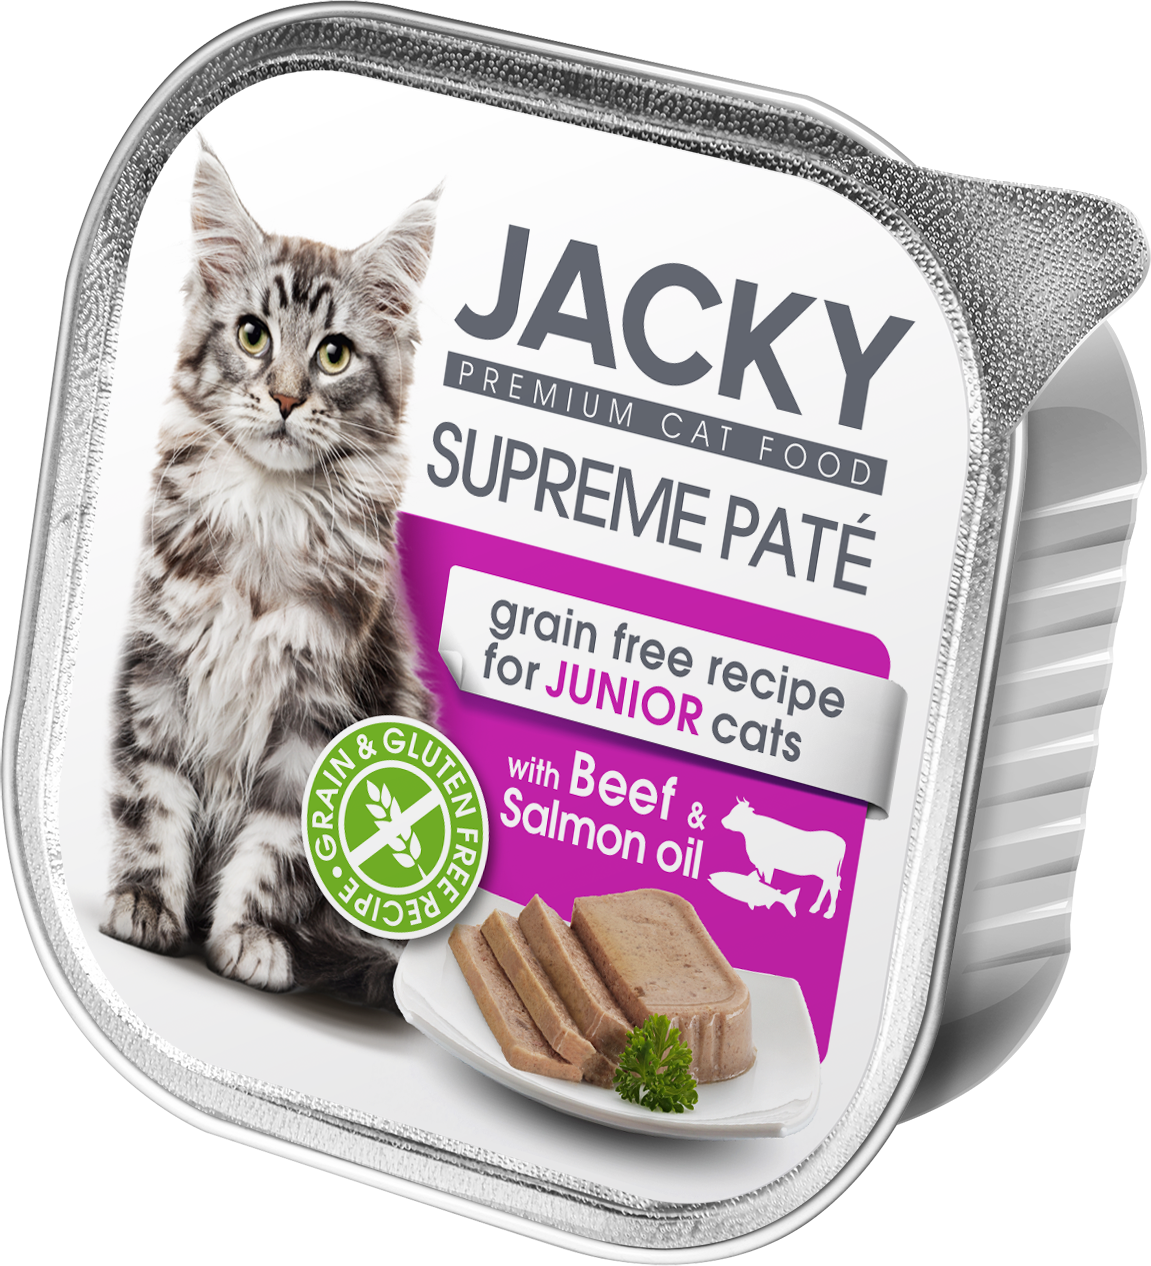 Jacky Supreme Paté pate de bovine cu ulei de somon 100g, conservă pentru pisicuțe